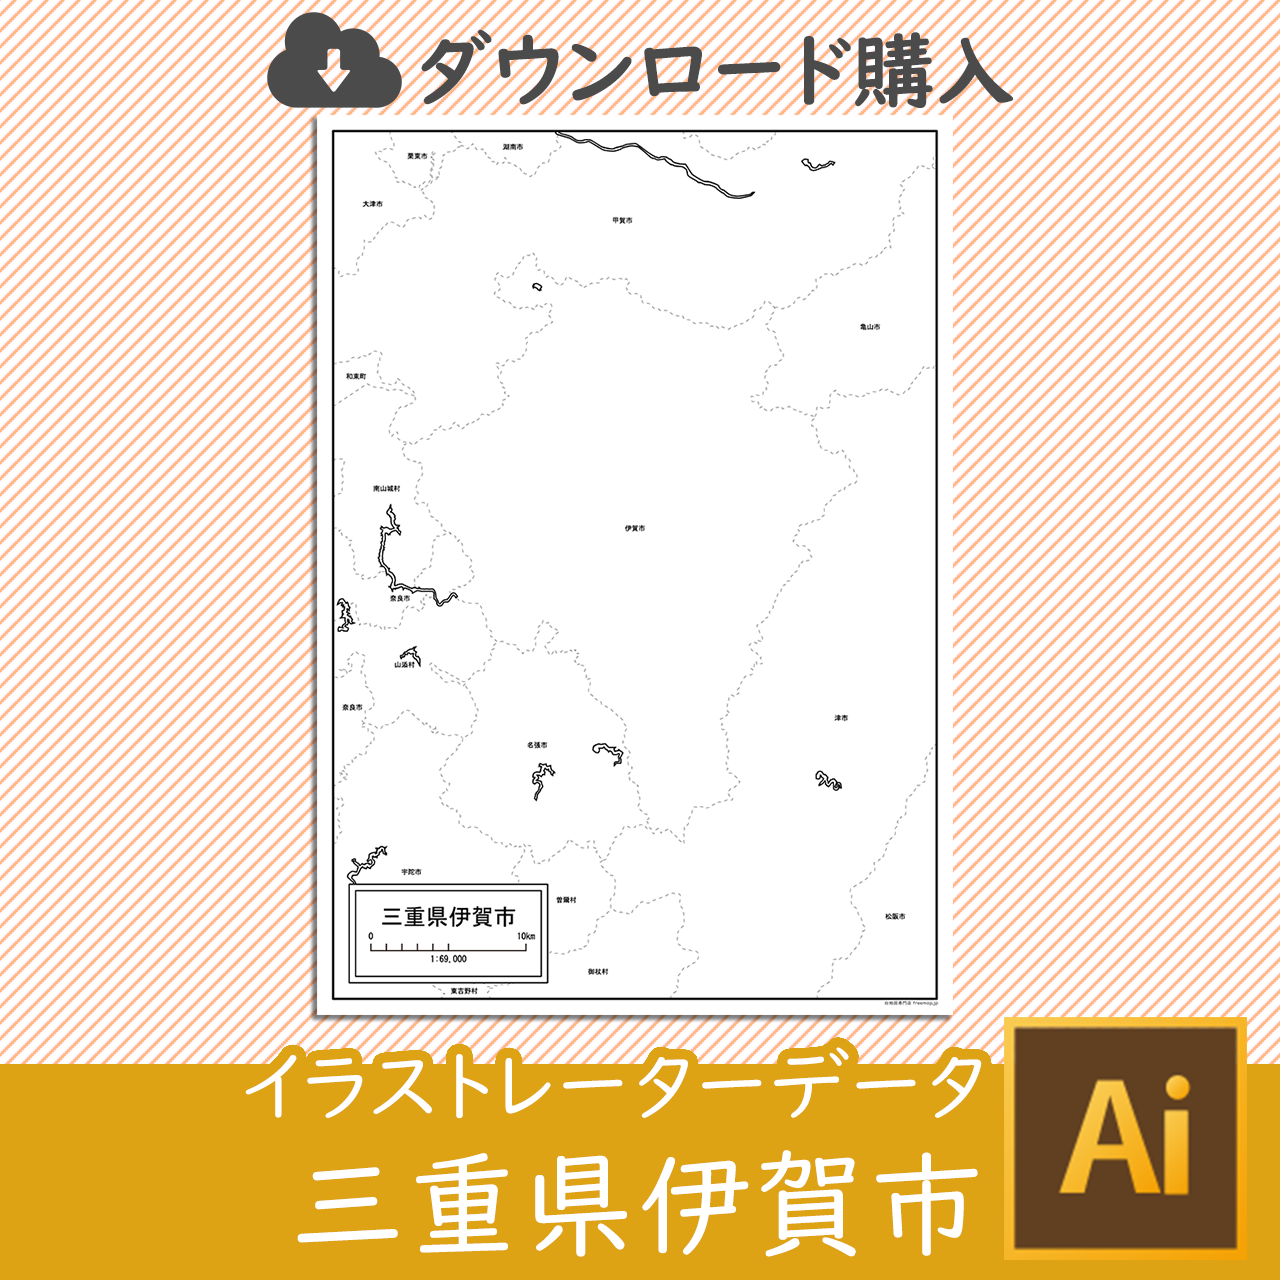 伊賀市のaiデータのサムネイル画像